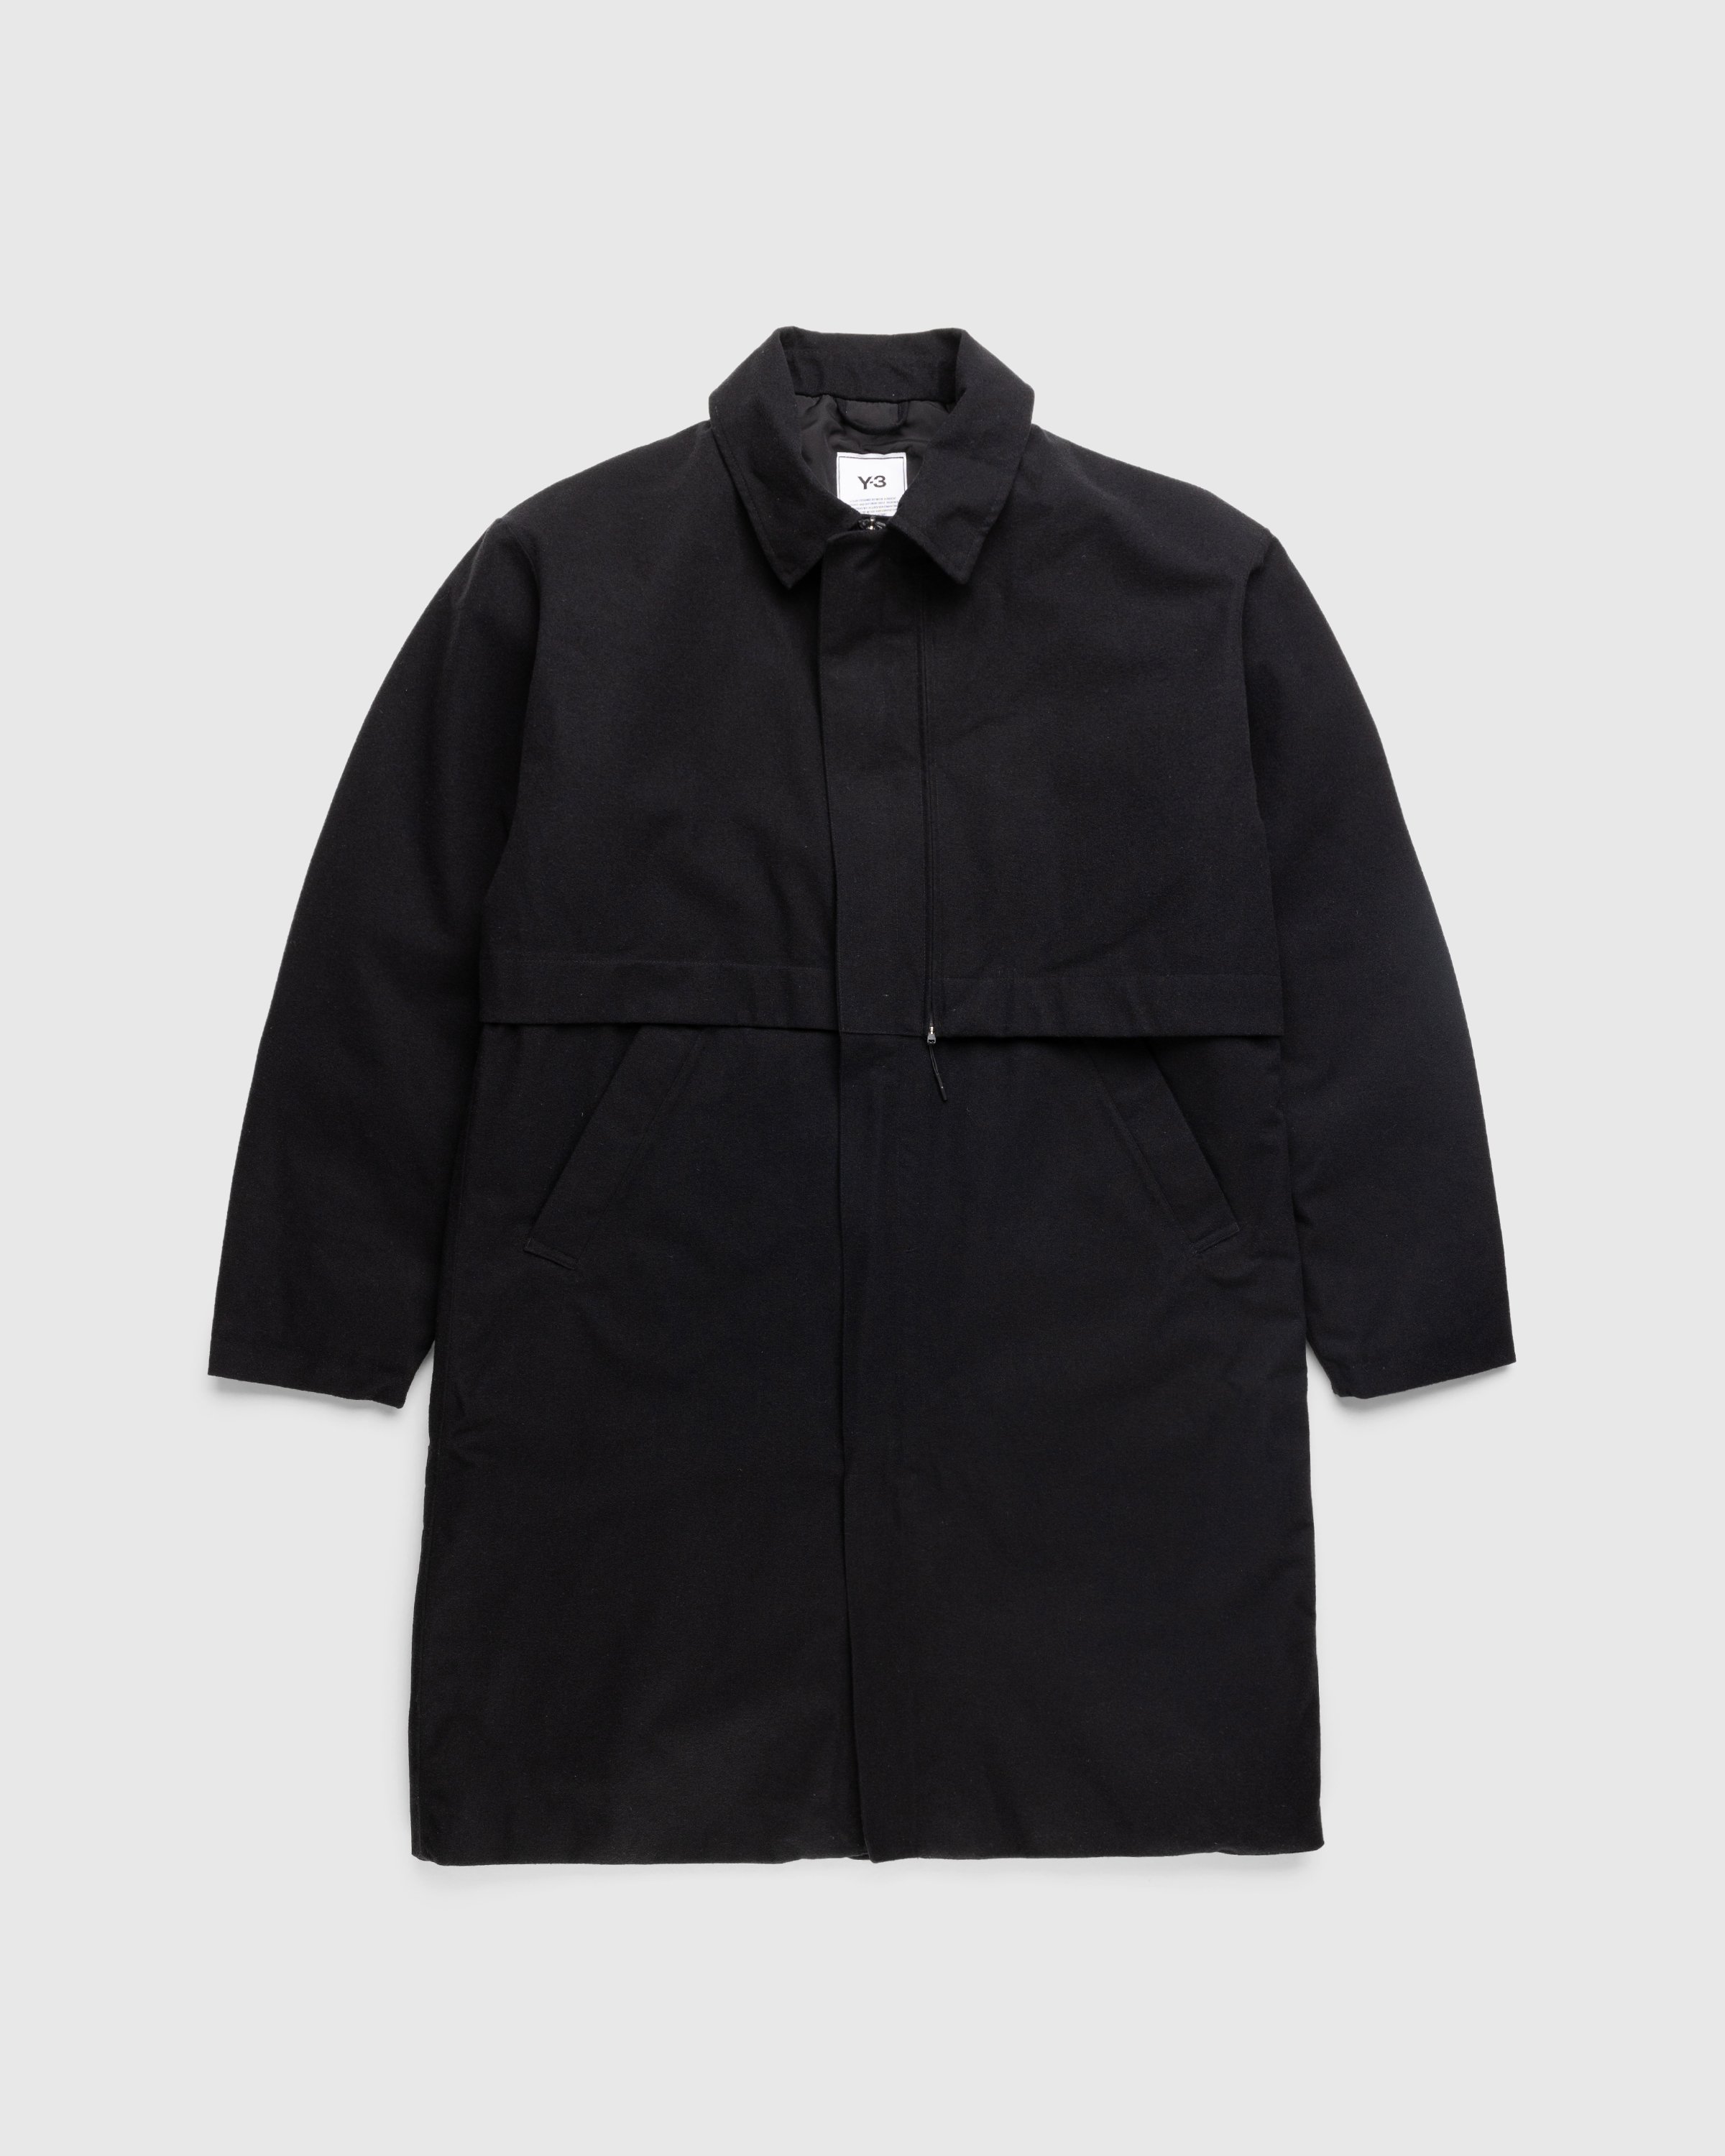 Y-3 - CL RGTX Coat - Clothing - Black - Image 1